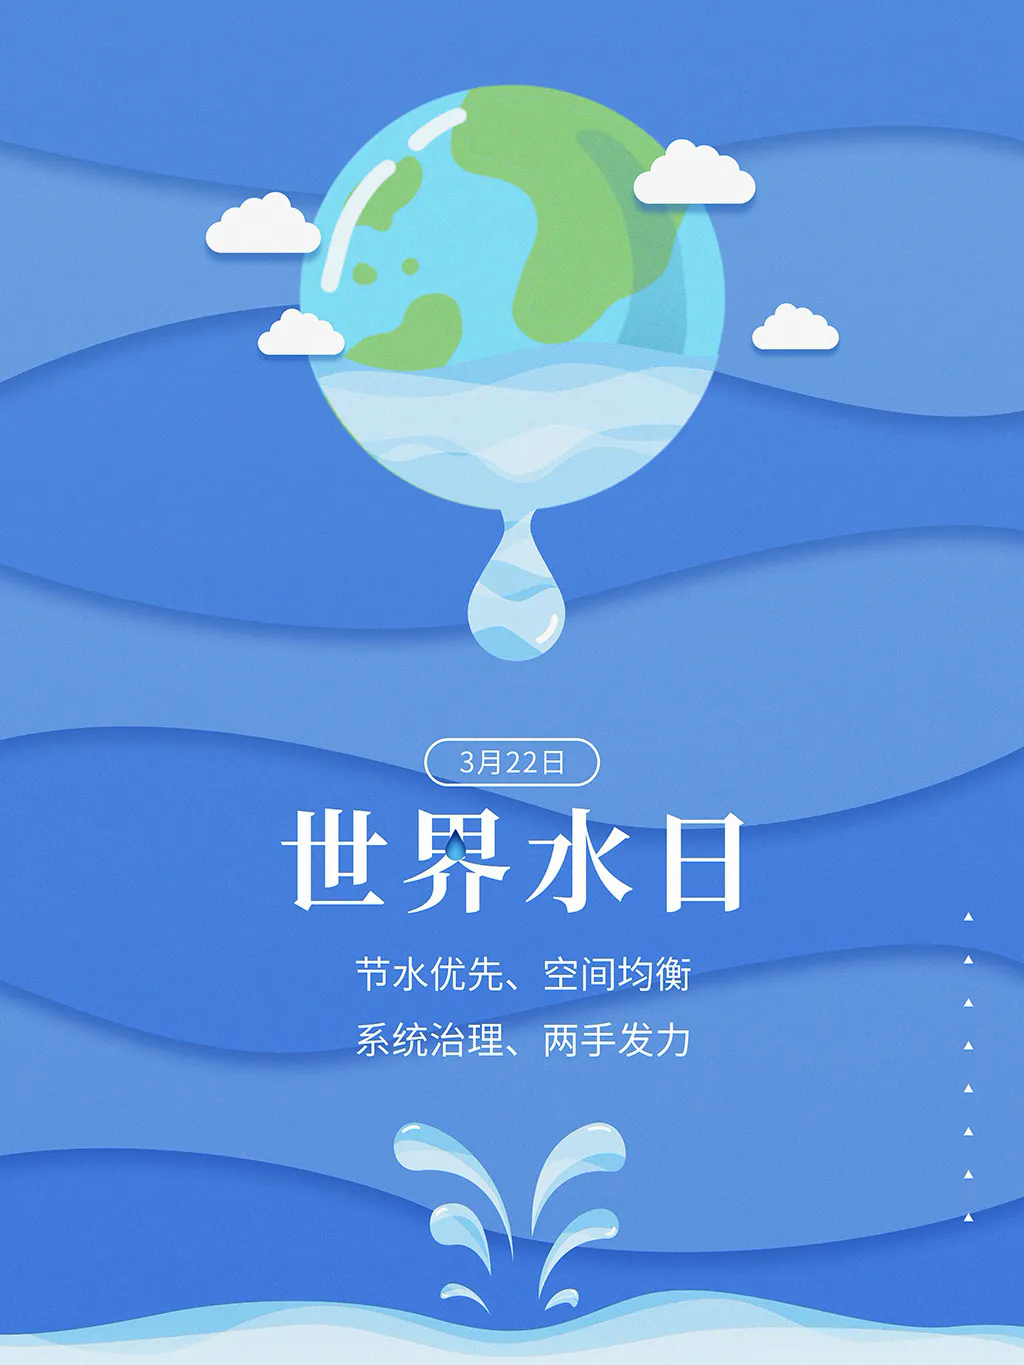 2021年"世界水日""中国水周"主题口号学起来